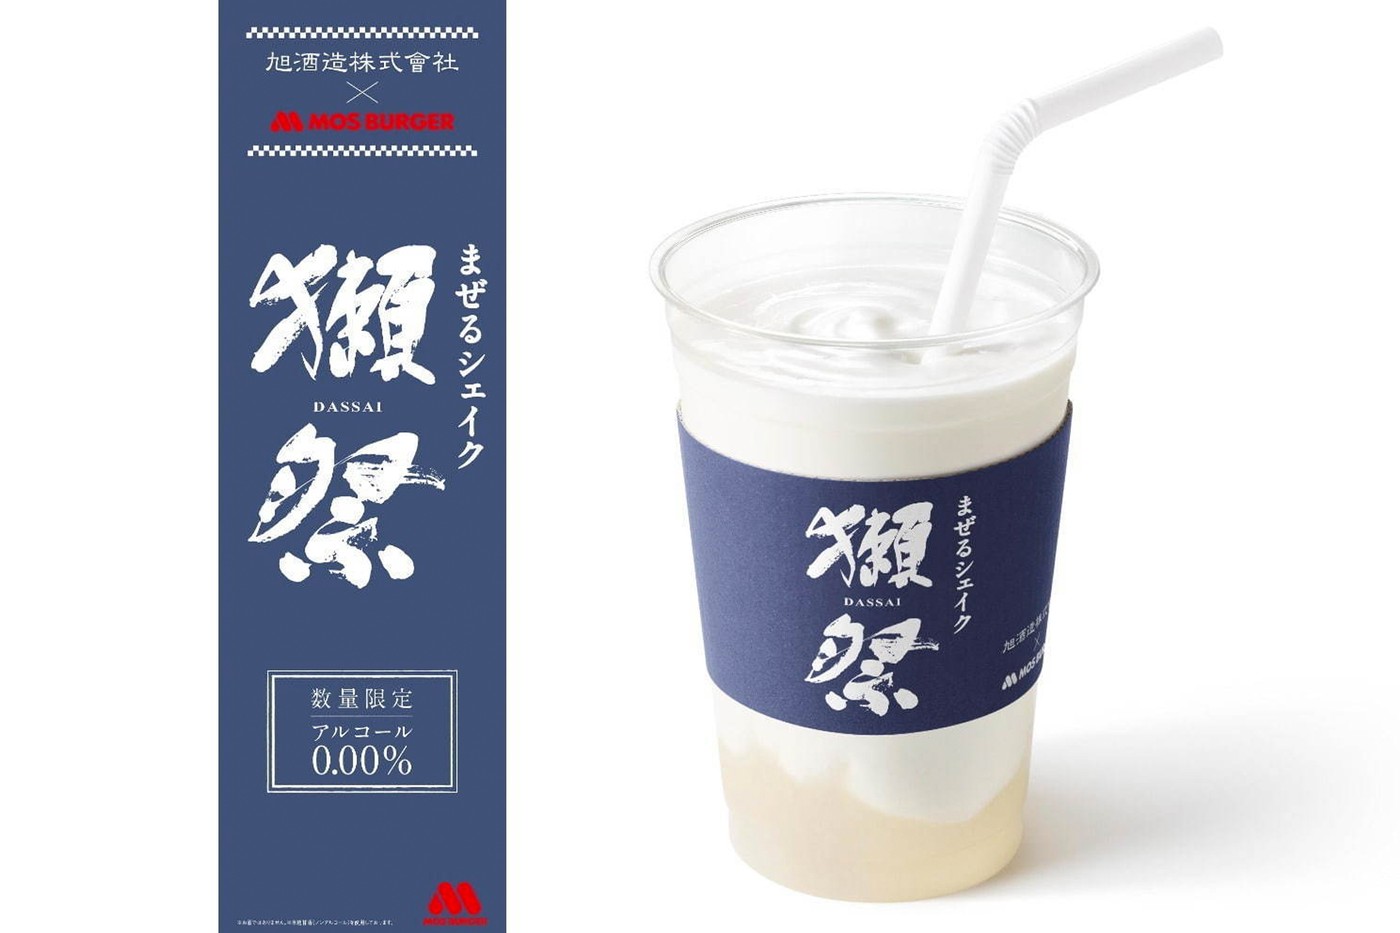 日本 Mos Burger 携手知名清酒品牌「獭祭 DASSAI」打造全新「米曲甘酒」口味奶昔